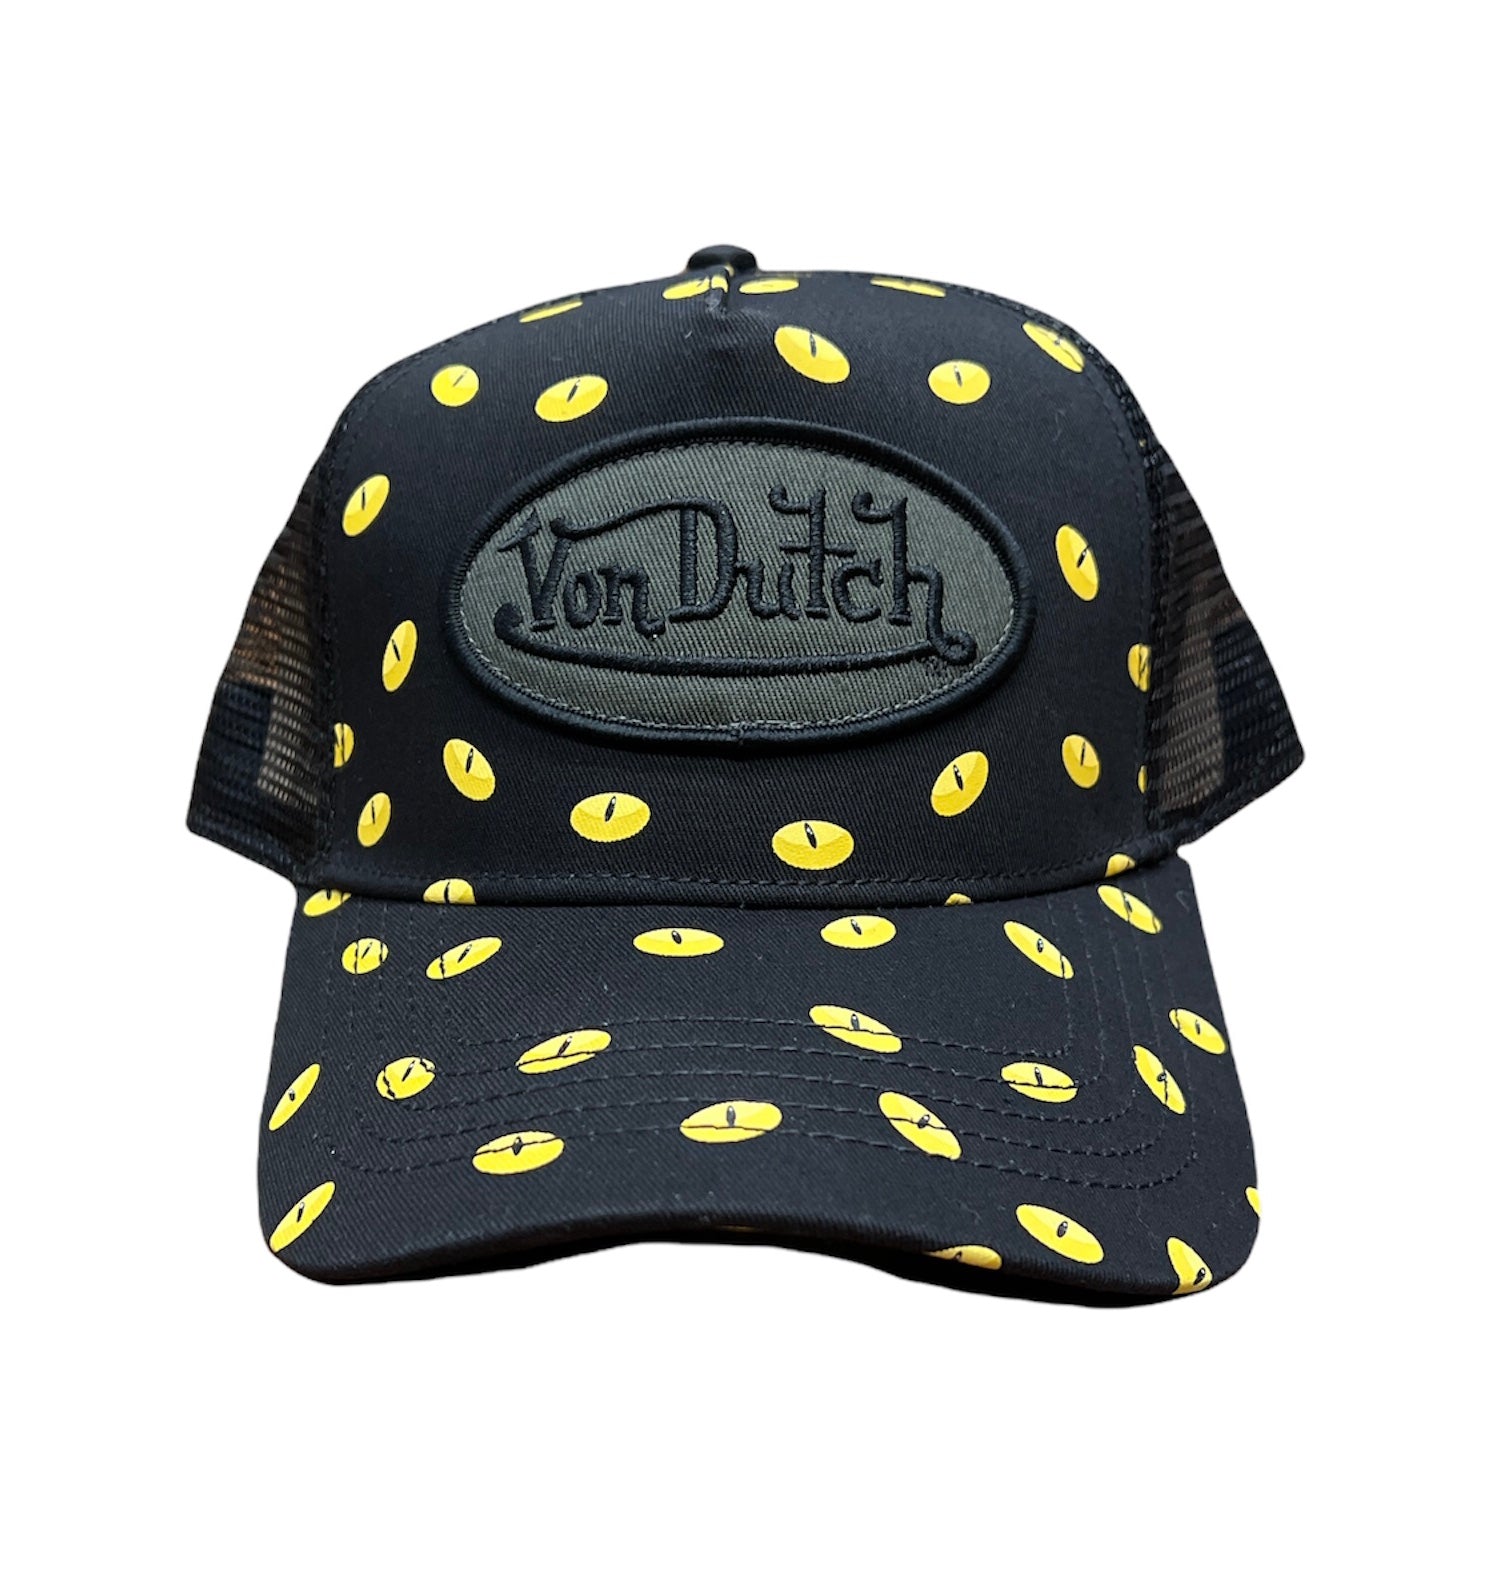 VON DUTCH Unisex Trucker Hat Black/Yellow cat eye one size fits all